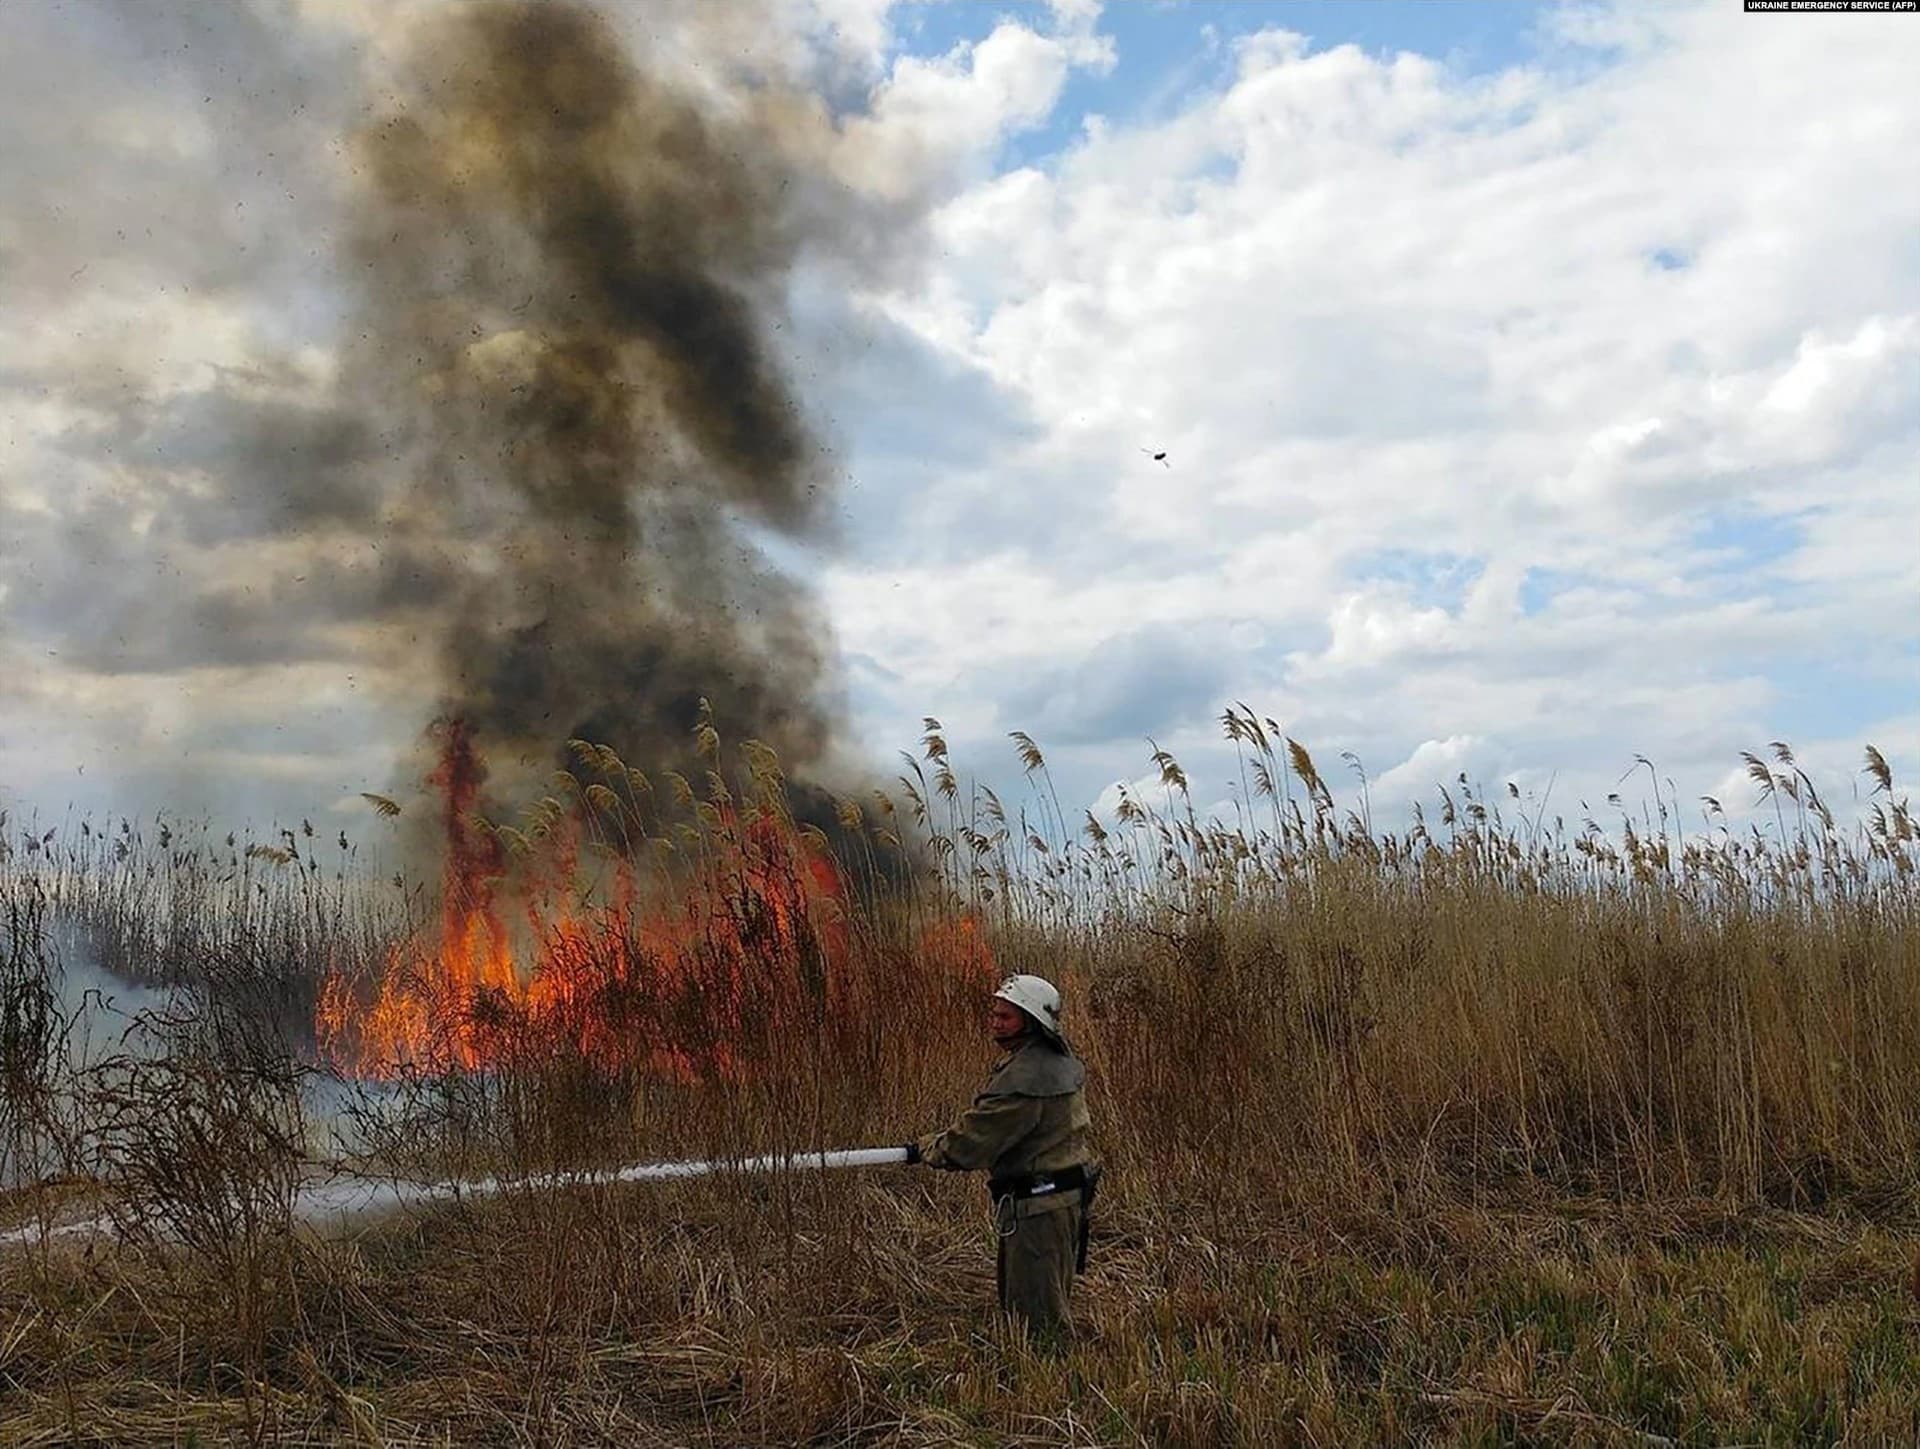 A firefighter battles a blaze in the Kherson region on July 18